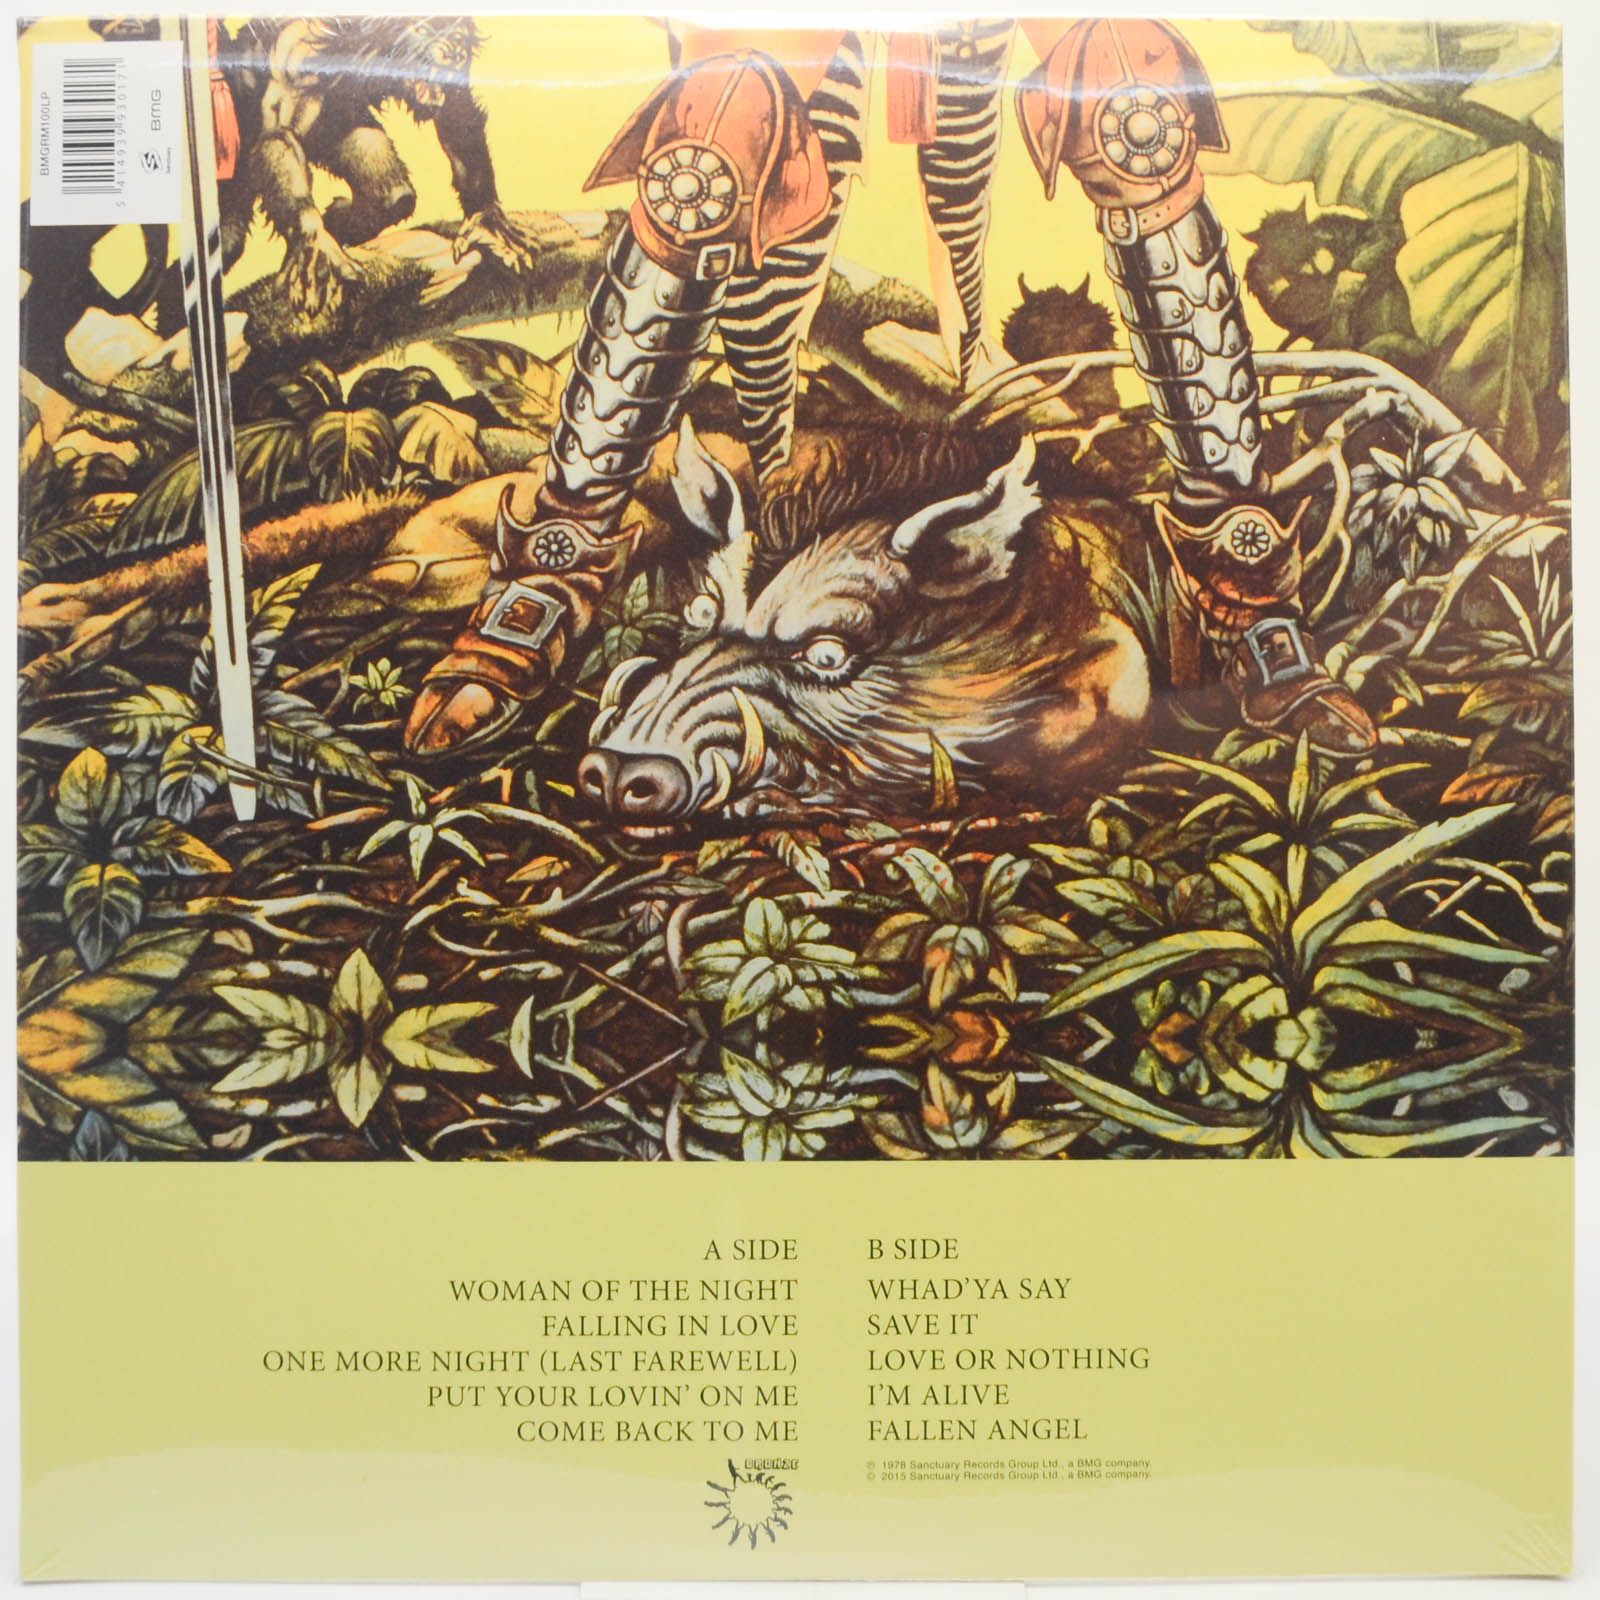 Uriah Heep — Fallen Angel, 1978